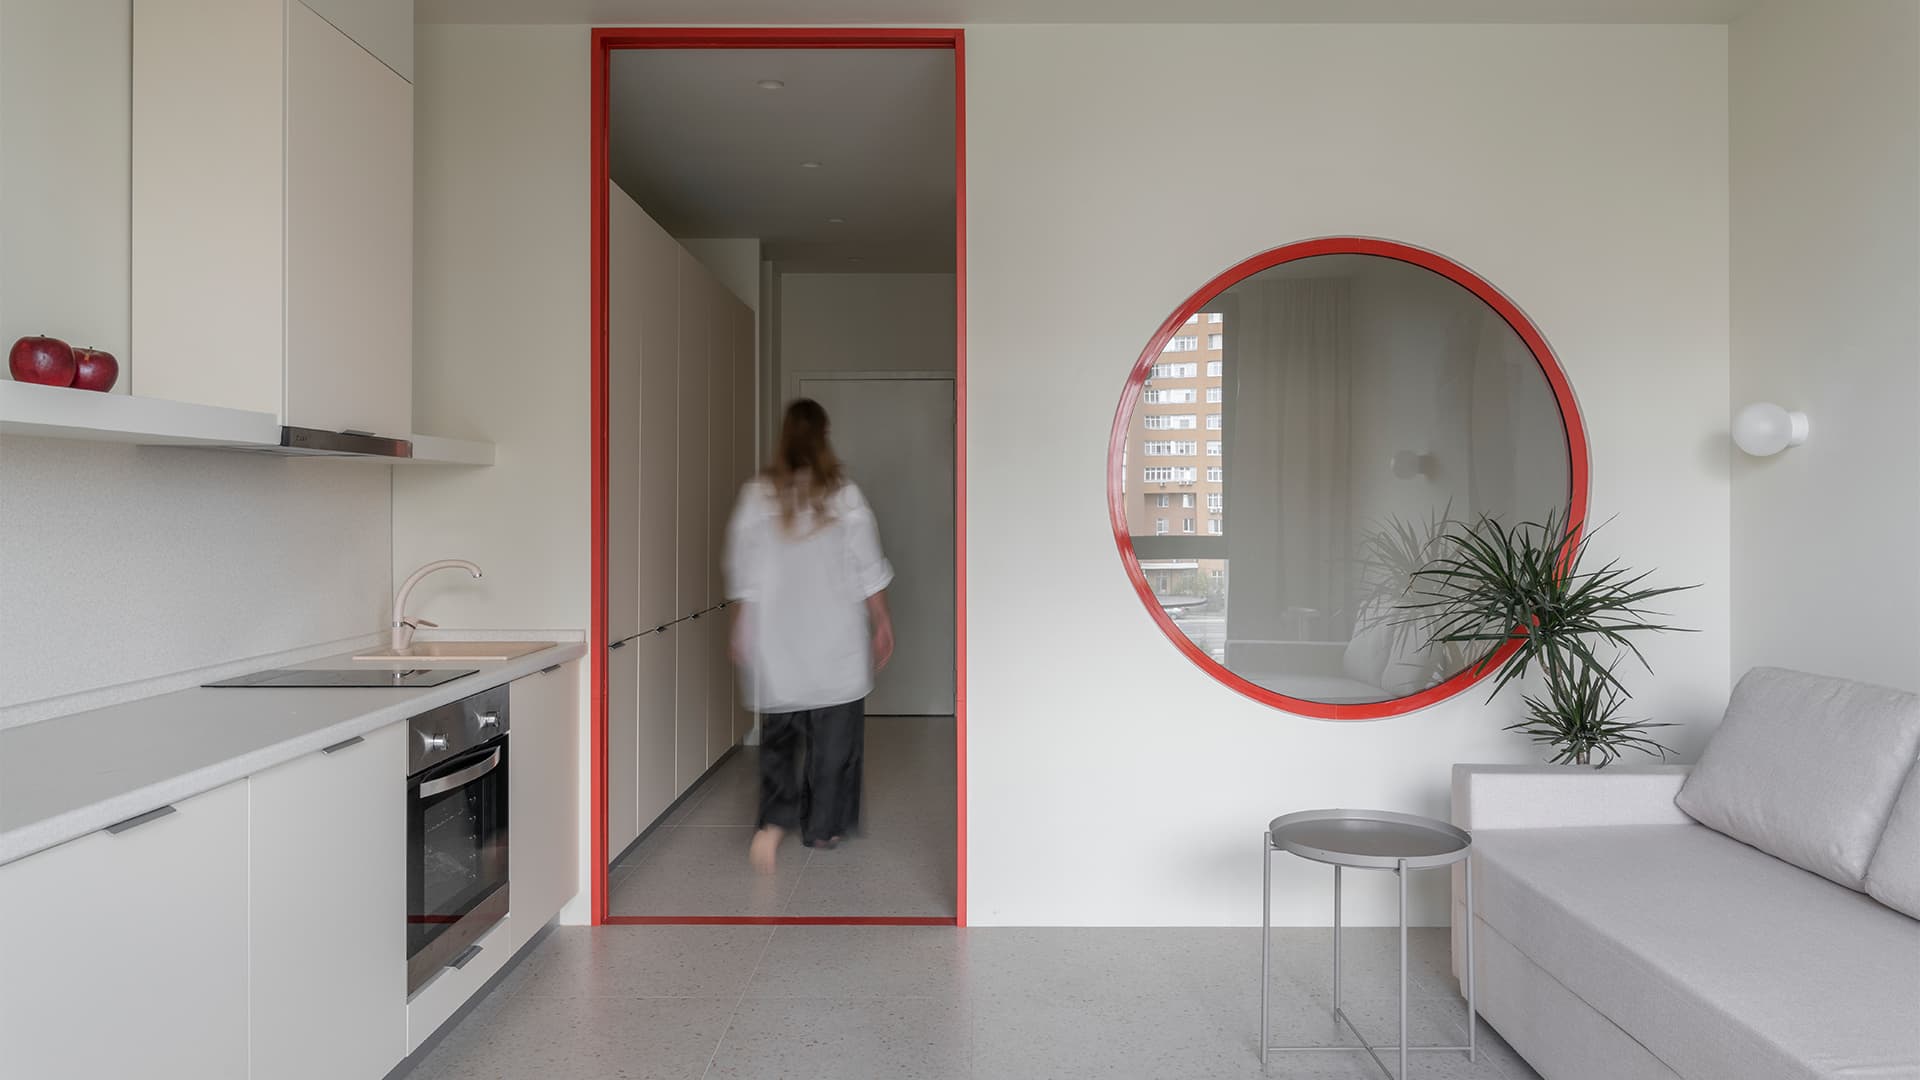 Динамичный интерьер маленькой квартиры, вдохновленный русским конструктивизмом — проект бюро SHKAF interior architects